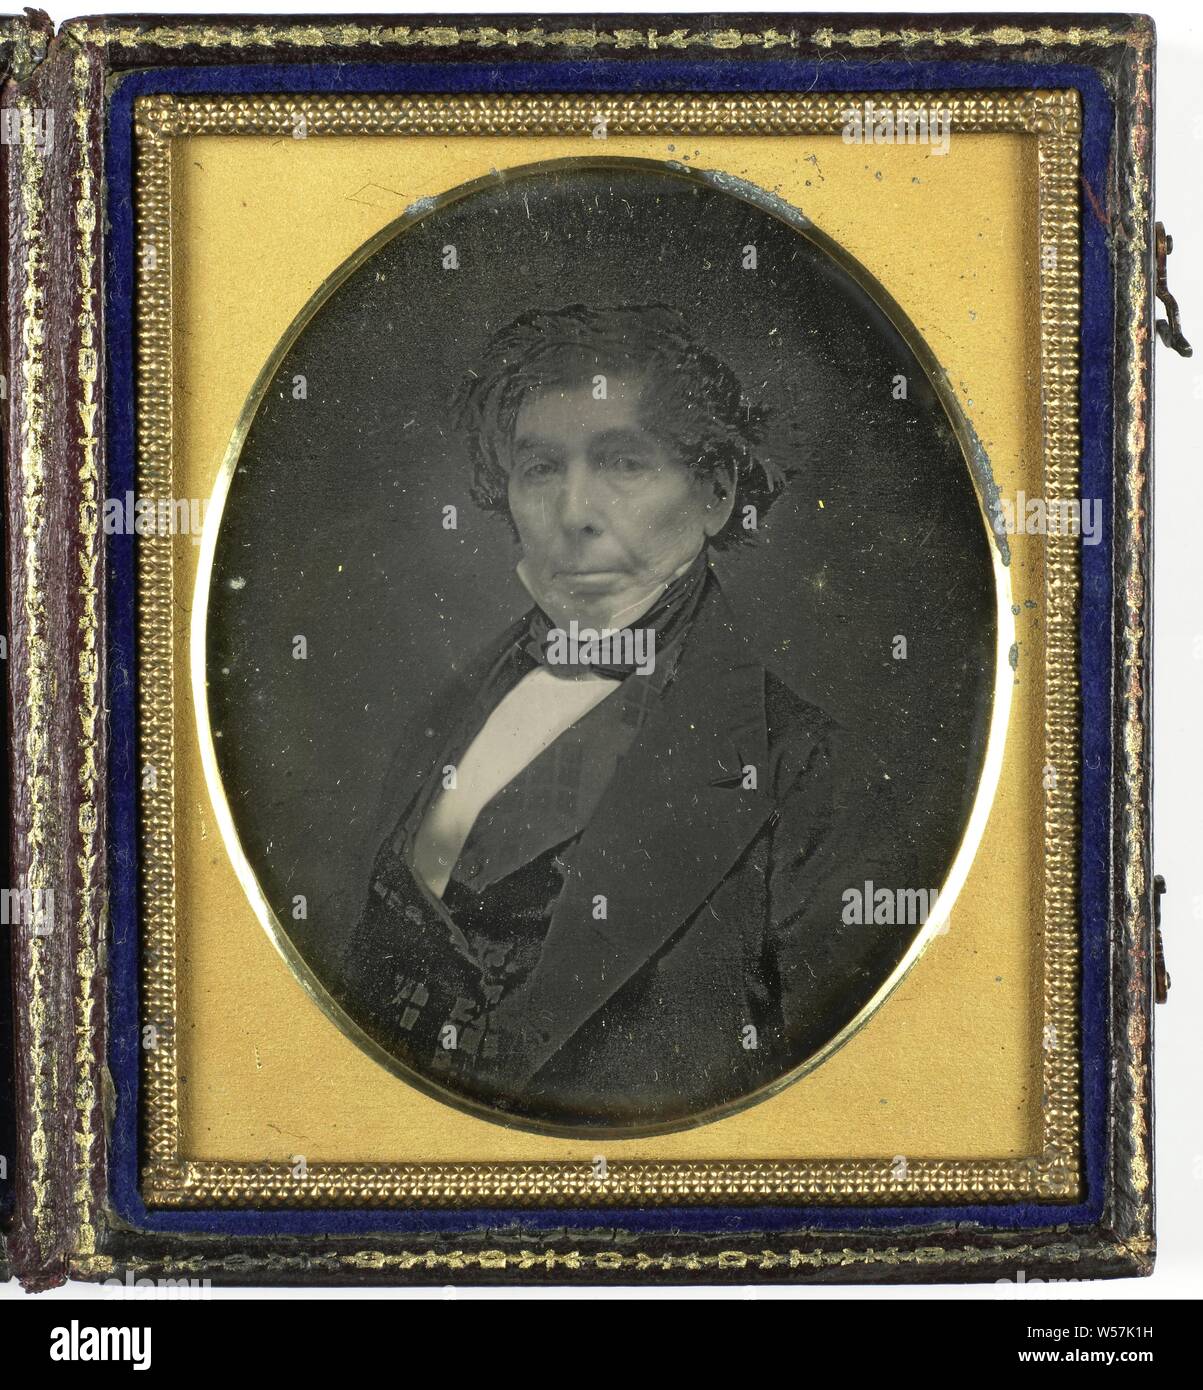 Ritratto di un uomo sconosciuto, storico delle persone, uomo adulto, G. Brown (menzionato in oggetto), 1840 - 1860, rame (metallo), vetro, velluto (fabric weave), pelle, h 93 mm × W 80 mm × T 14 mm Foto Stock